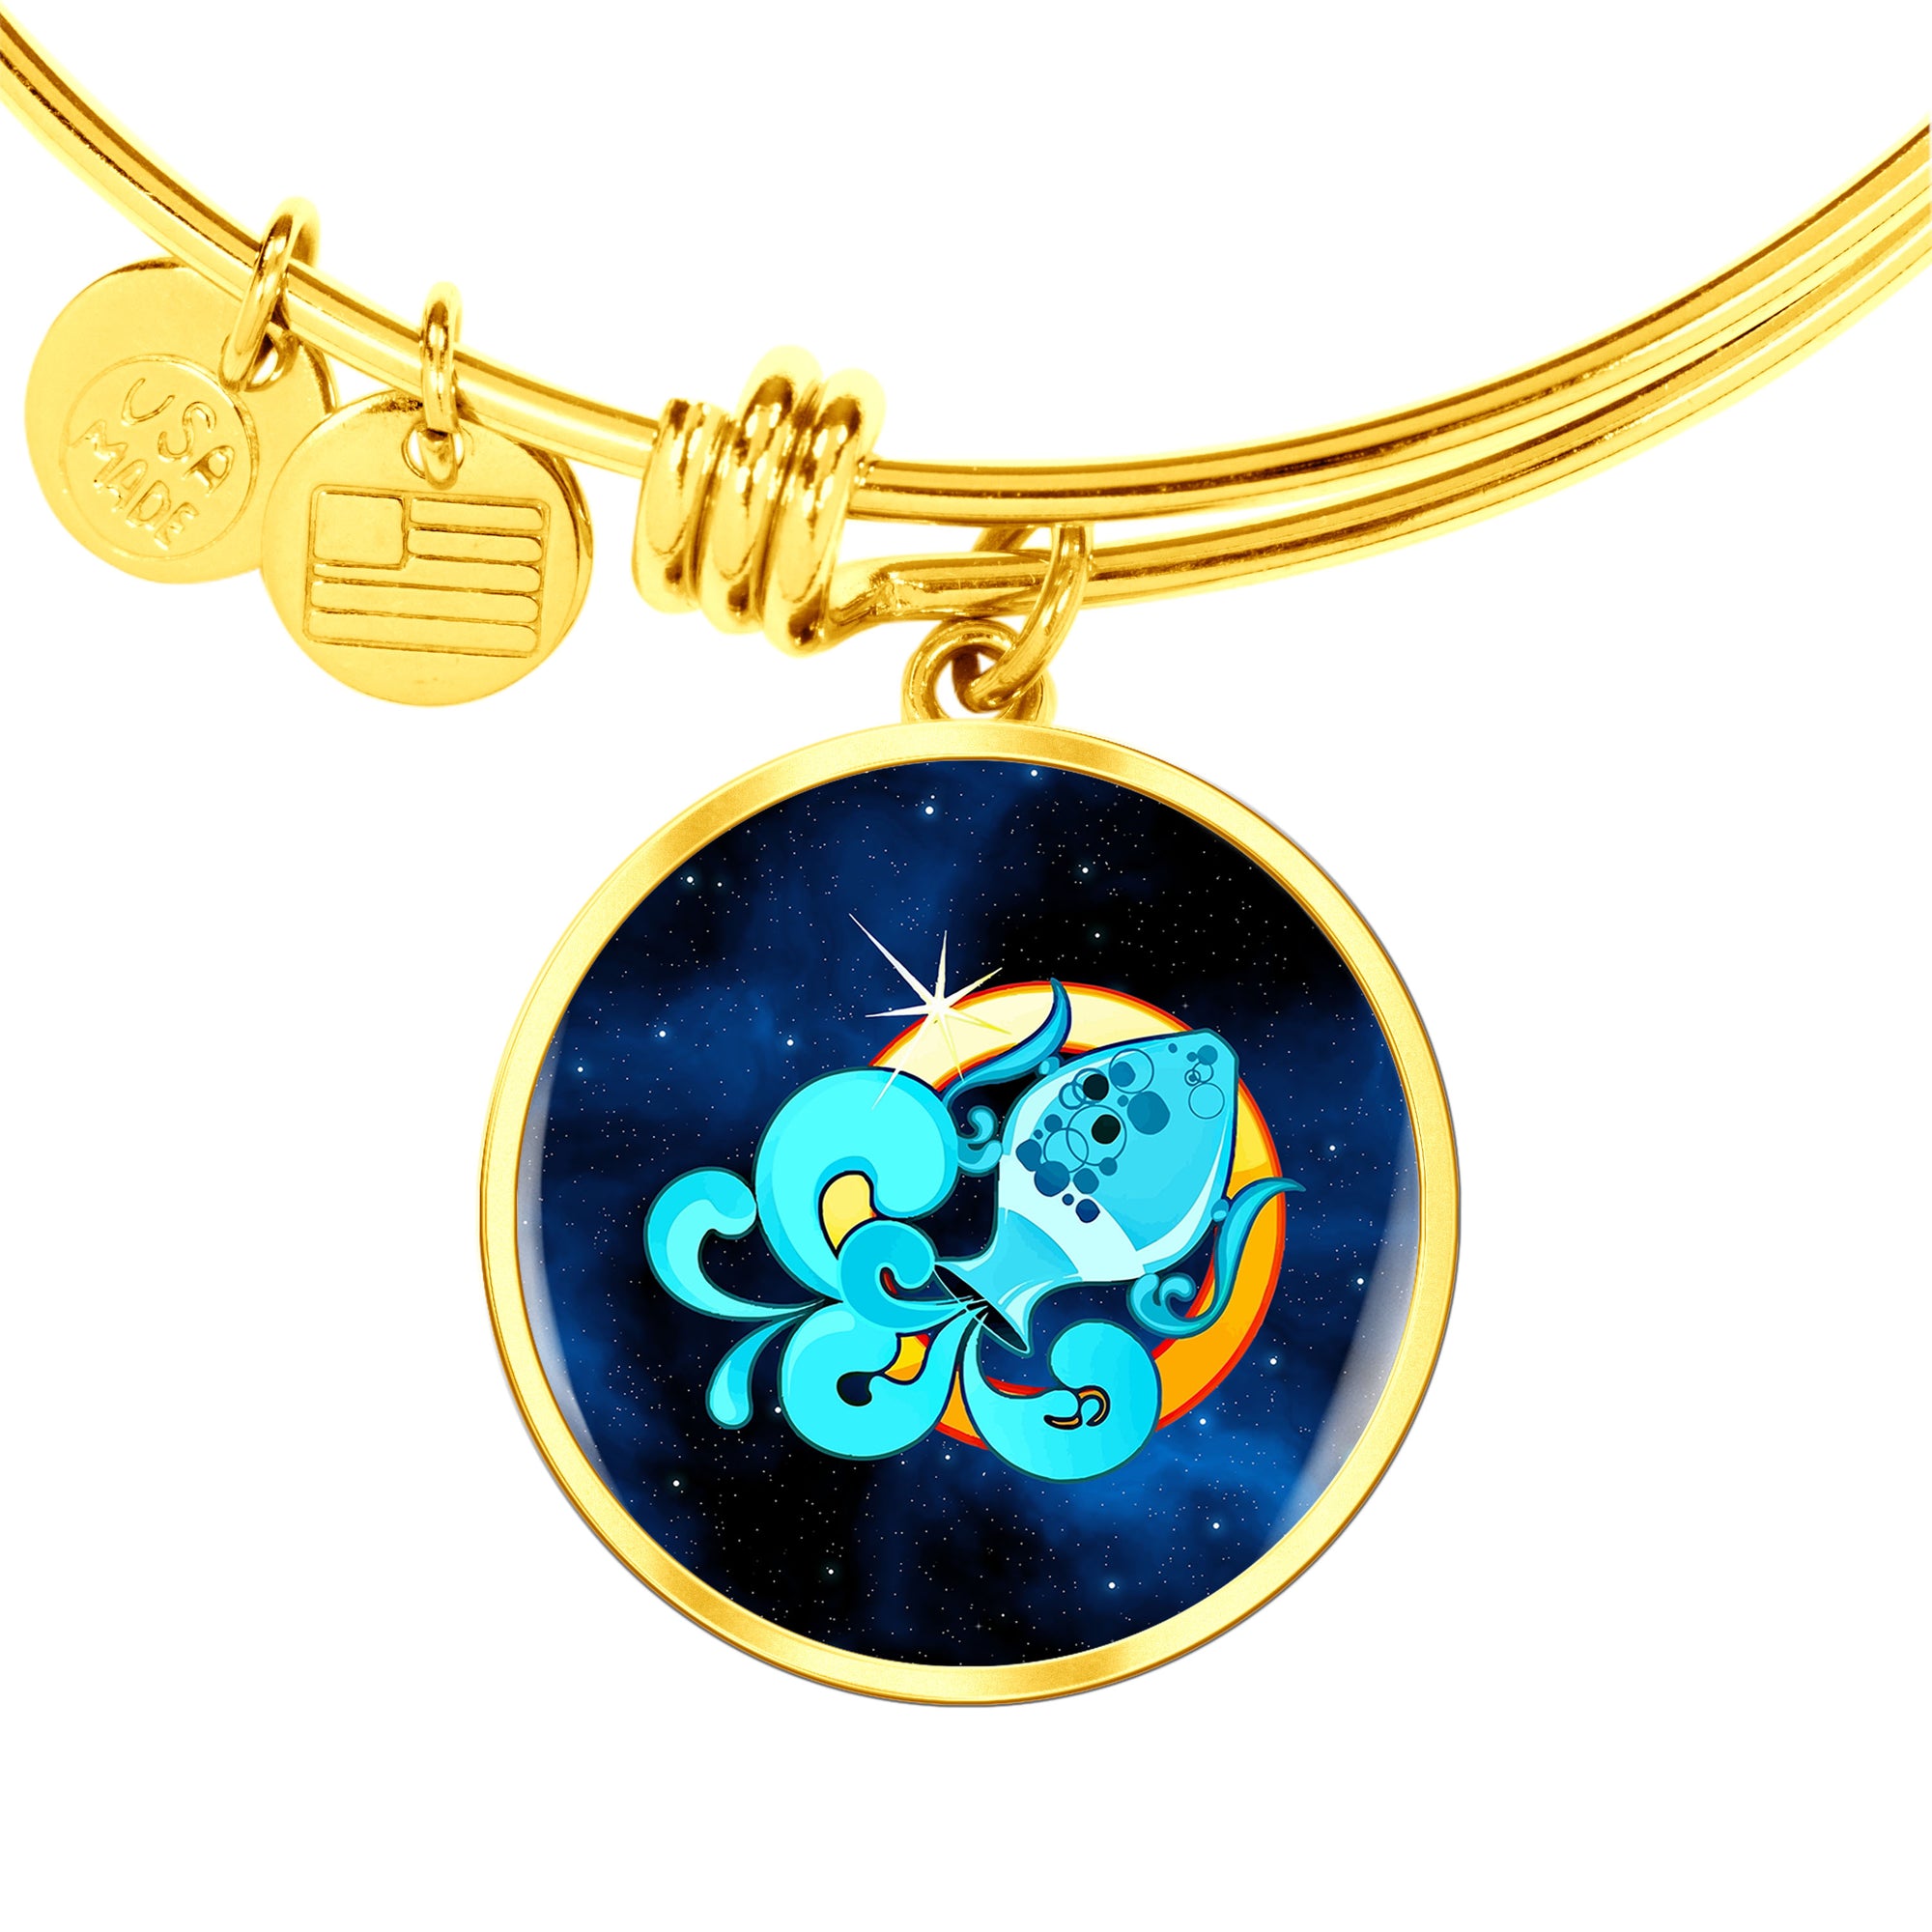 Zodiac Sign Aquarius - 18k Gold Finished Bangle Bracelet